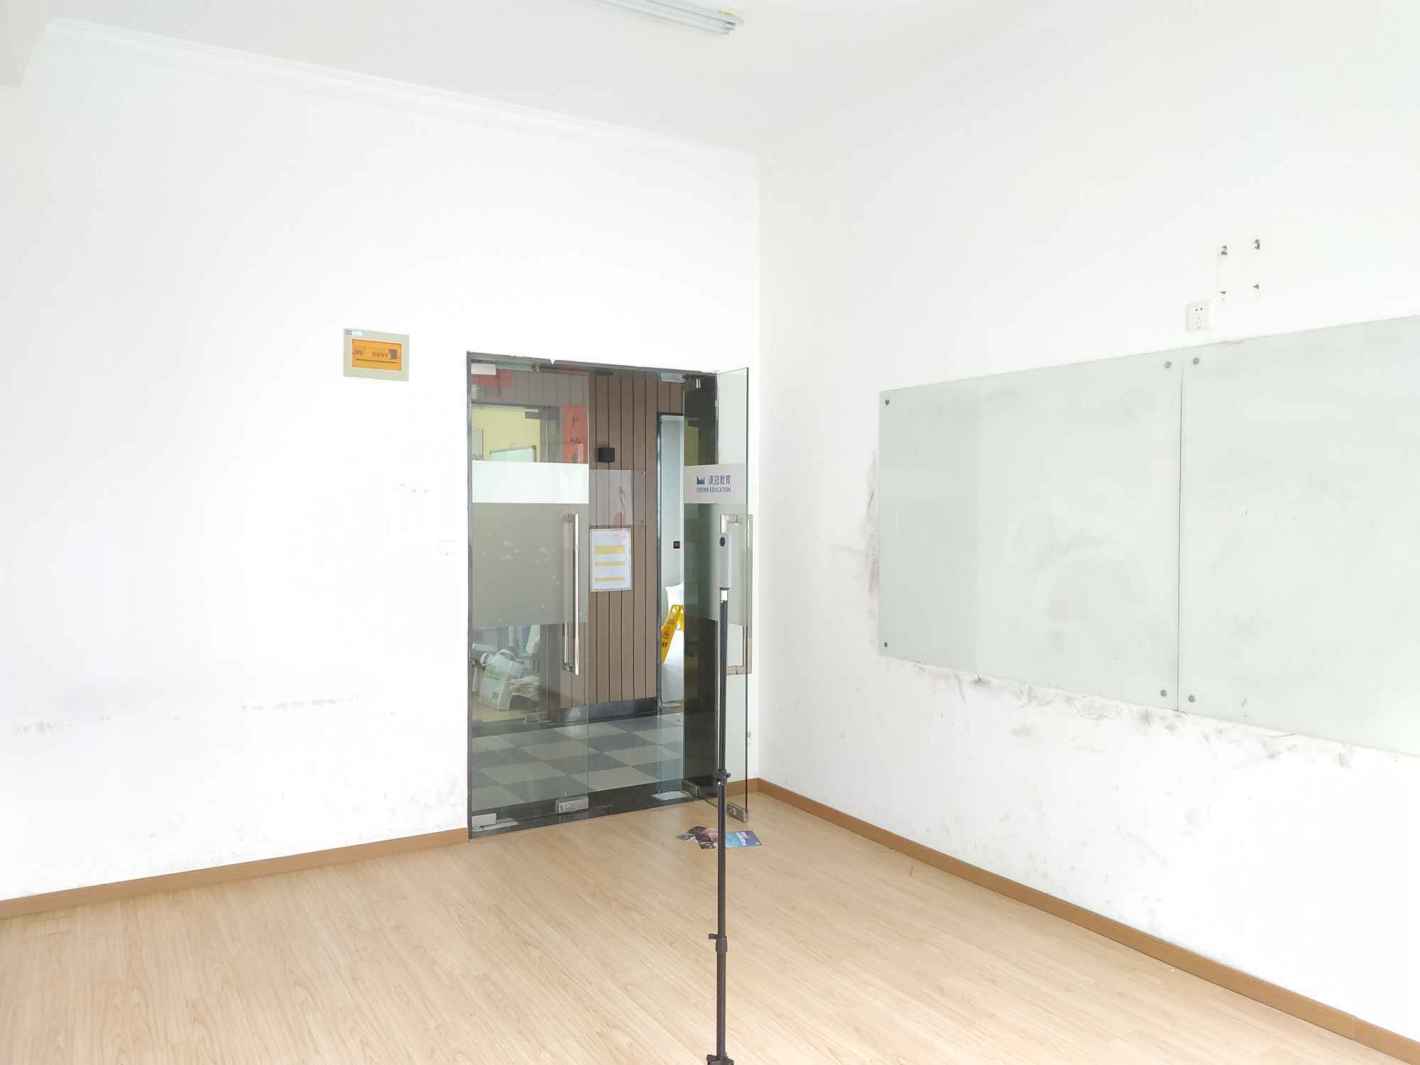 越界·X2创意空间二期58平米办公室出租-租金价格5.58元/m²/天